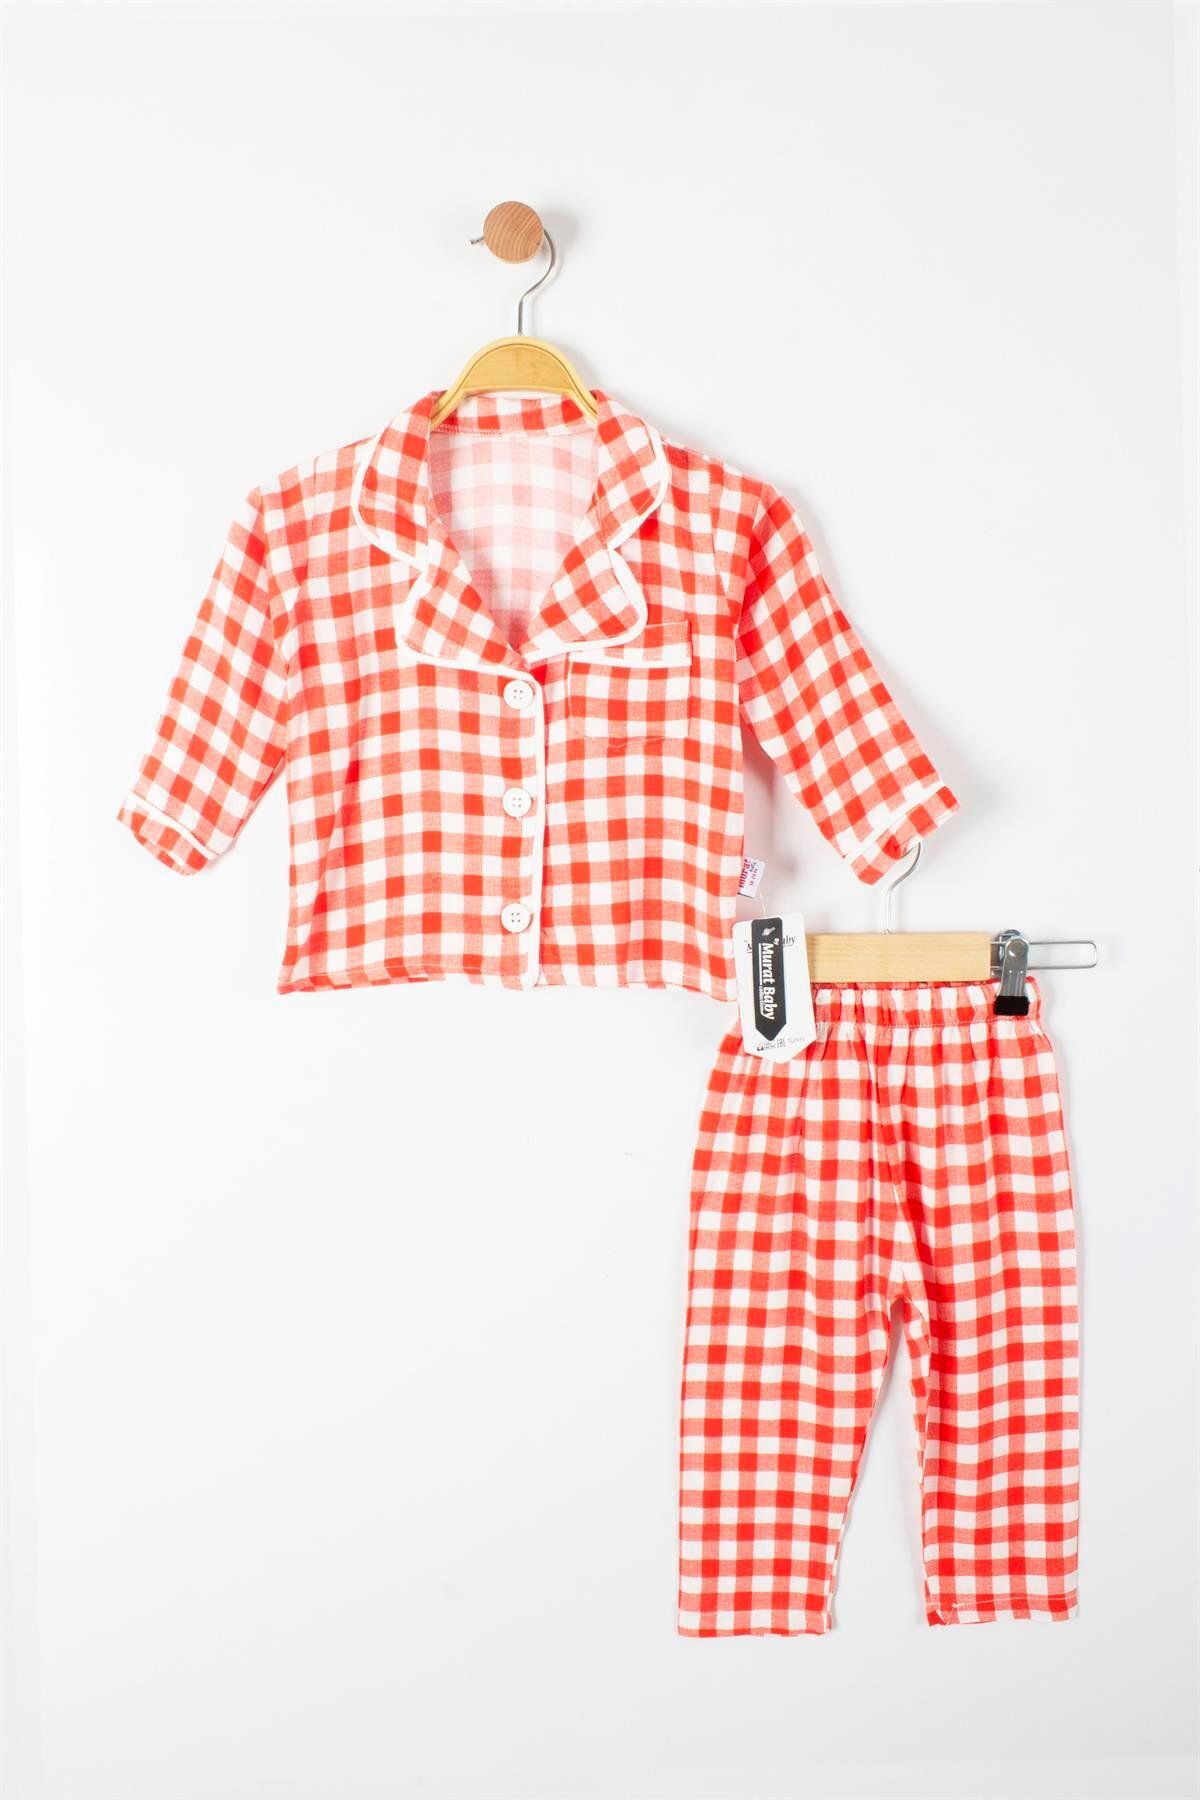 TRENDİMİZBİR Kareli Düğmeli Kız Bebek Pijama Takımı